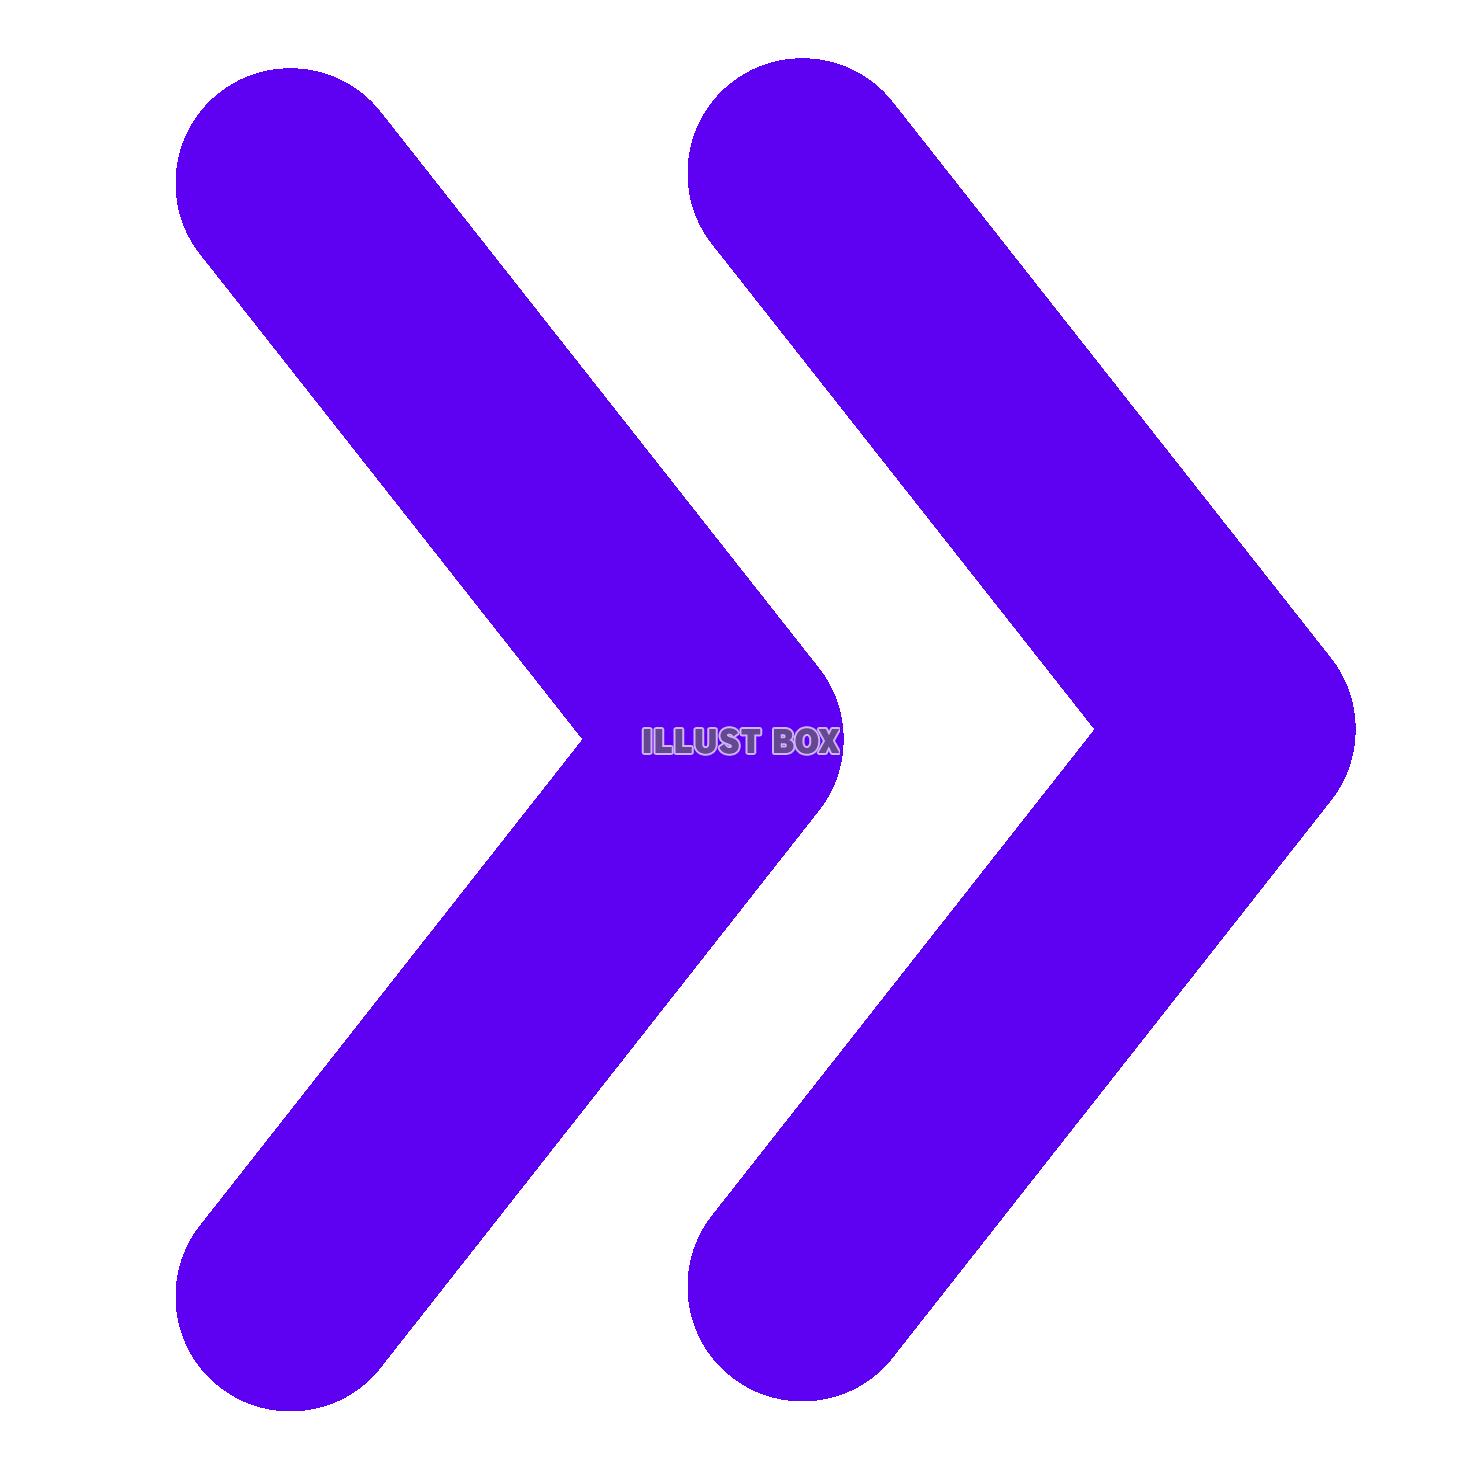 シンプルな紫の二本線の矢印のマーク